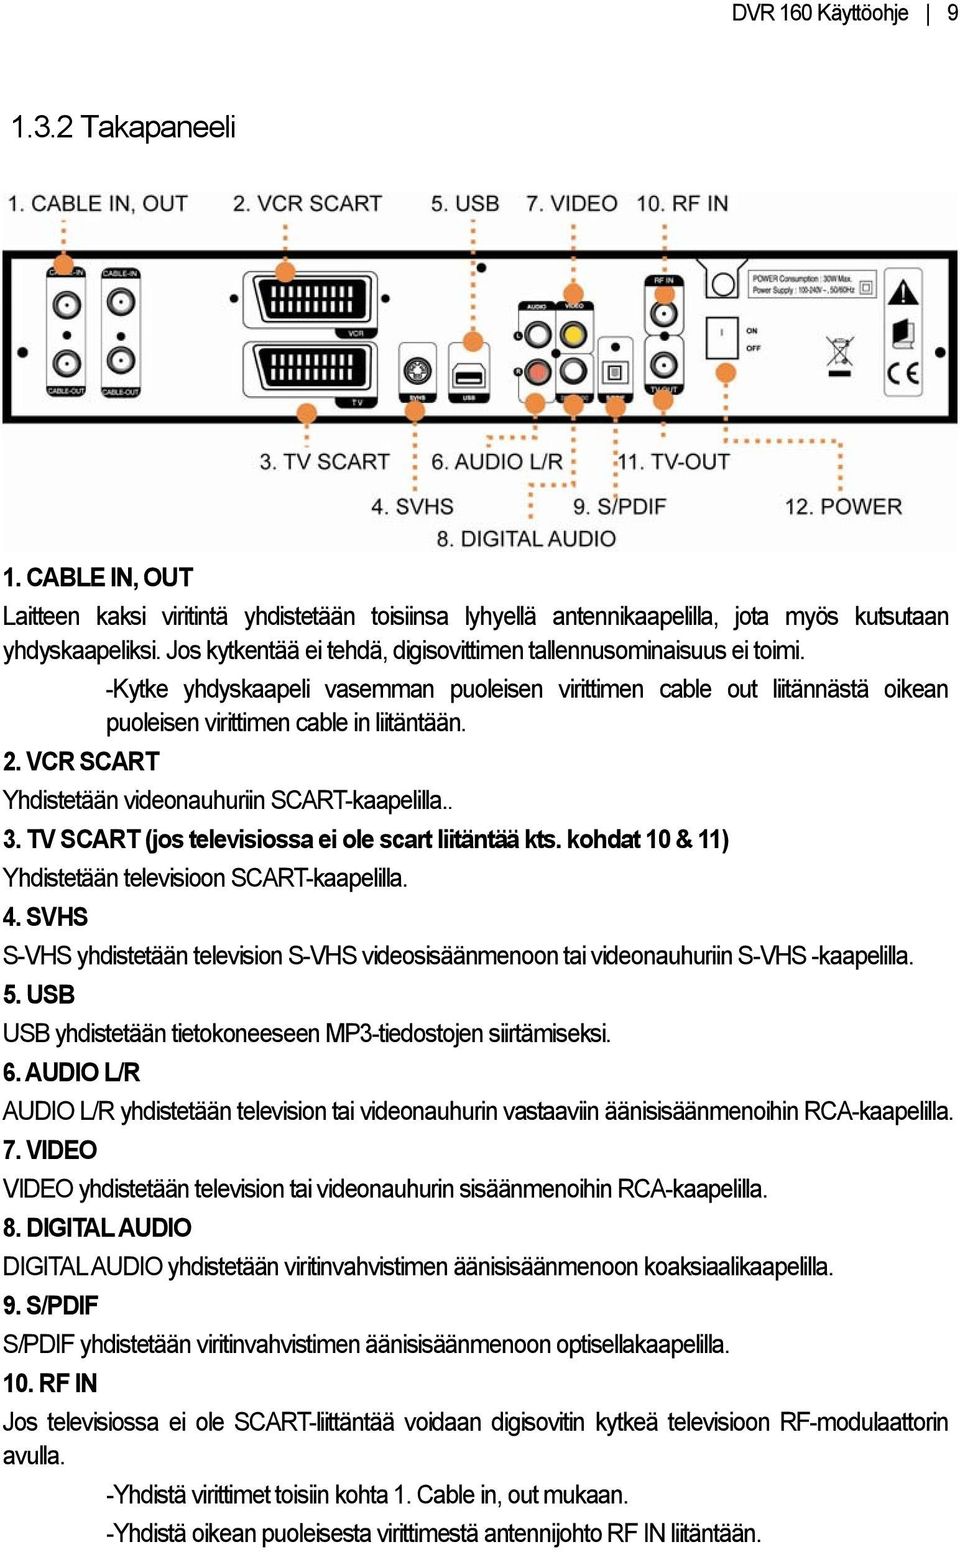 VCR SCART Yhdistetään videonauhuriin SCART-kaapelilla.. 3. TV SCART (jos televisiossa ei ole scart liitäntää kts. kohdat 10 & 11) Yhdistetään televisioon SCART-kaapelilla. 4.